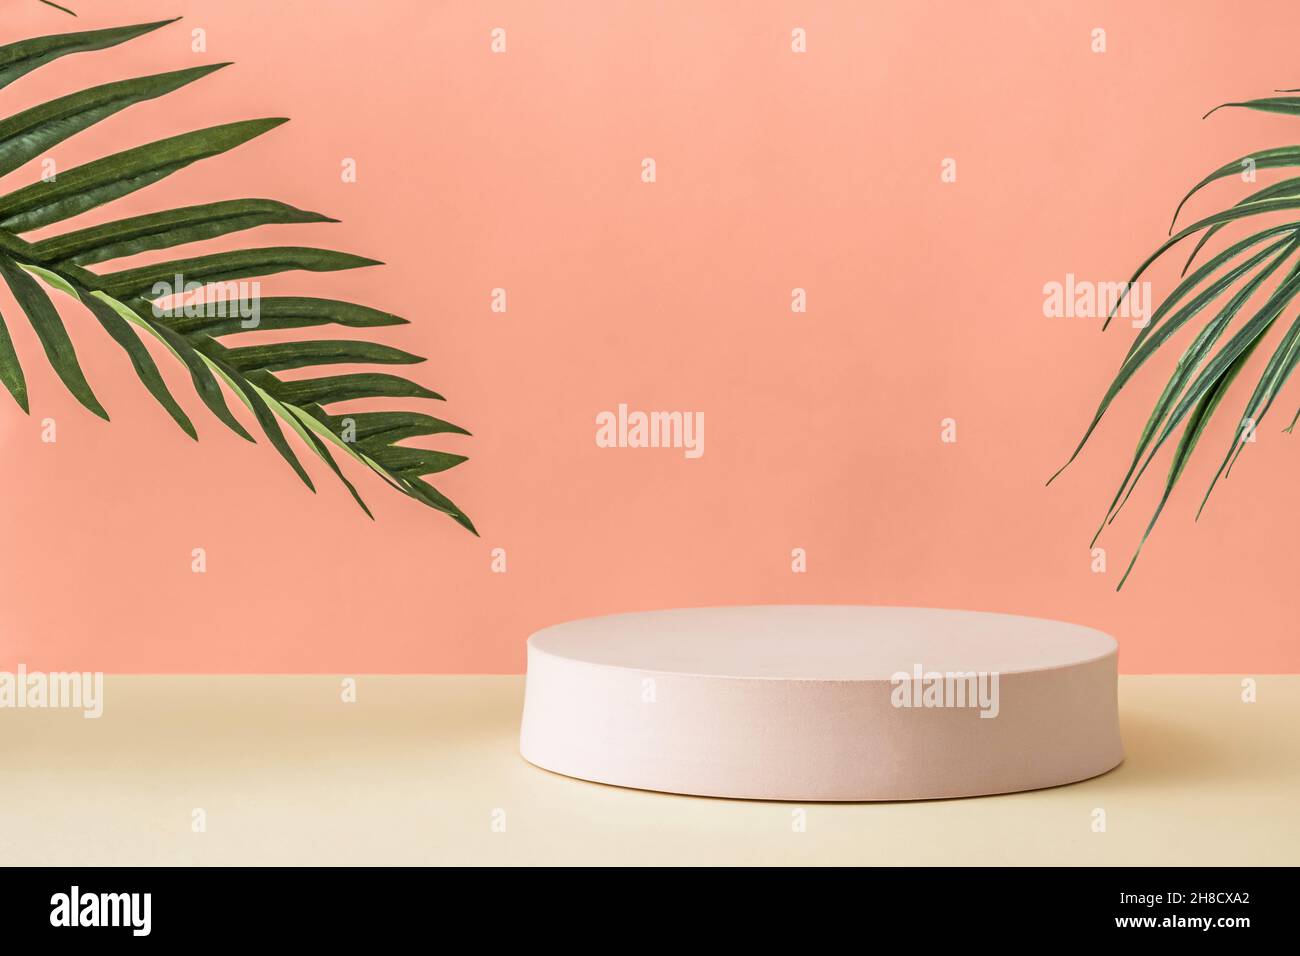 Fond de présentation artistique avec un podium blanc rond entre les feuilles vertes contre fond rose pastel pour l'espace de copie comme concept de sérénité Banque D'Images